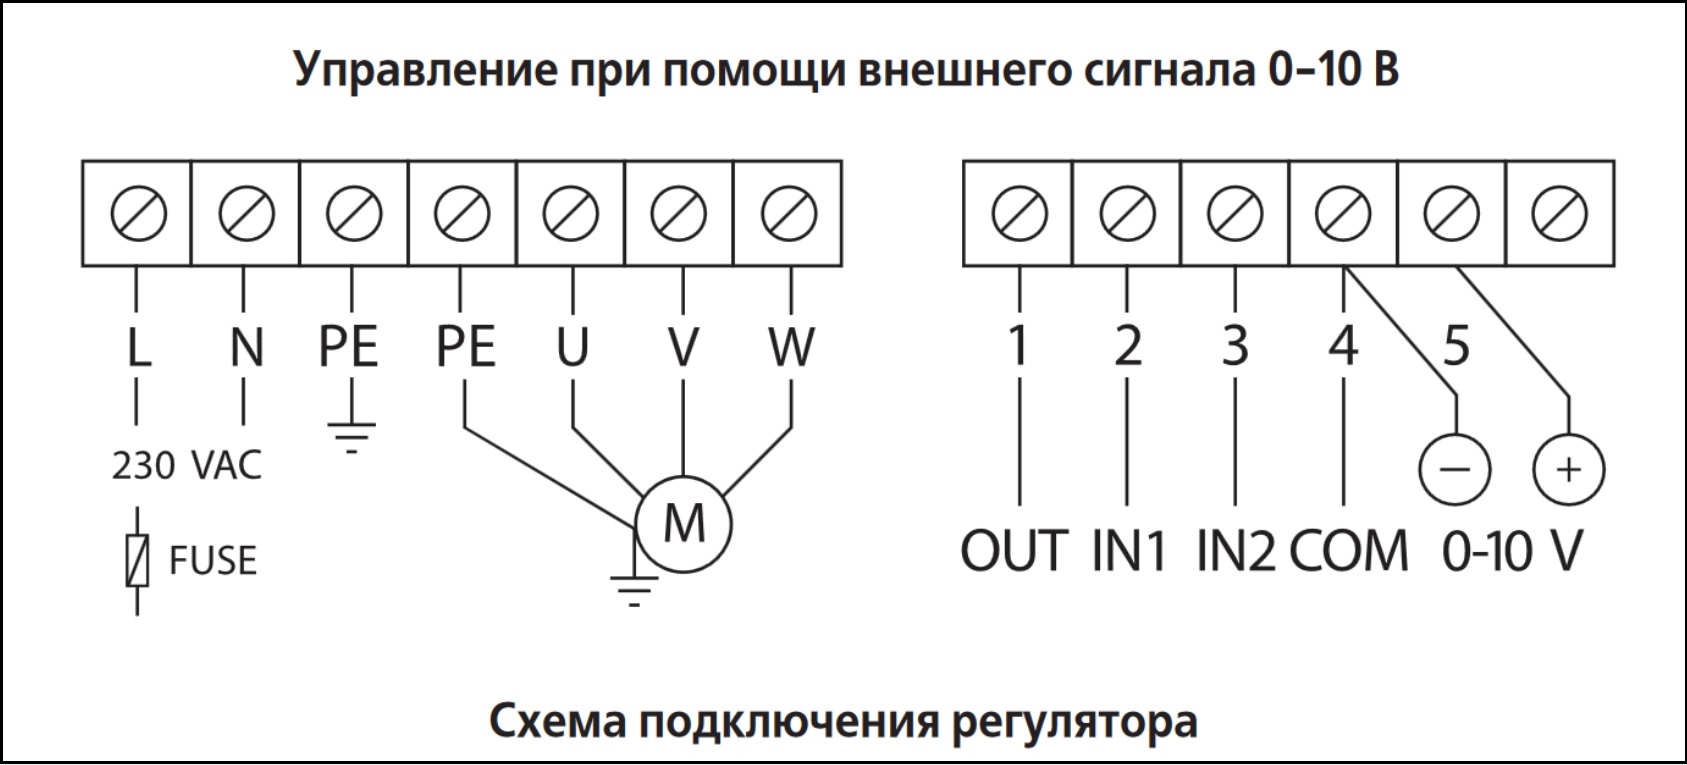 Схема подключения регулятора скорости ВЕНТС ВФЕД-750-ТА